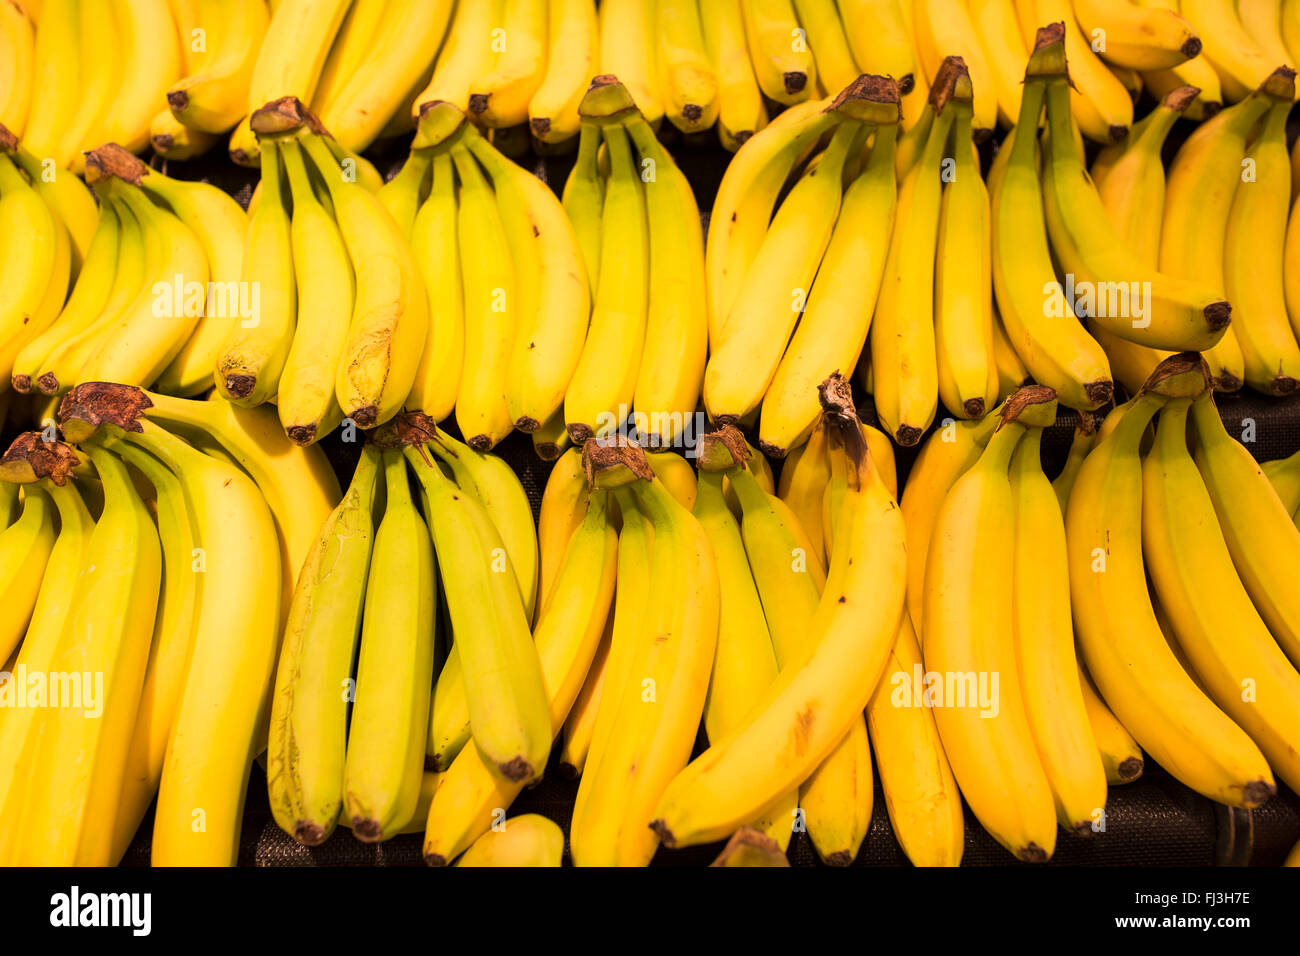 Los plátanos a la venta en un supermercado Foto de stock